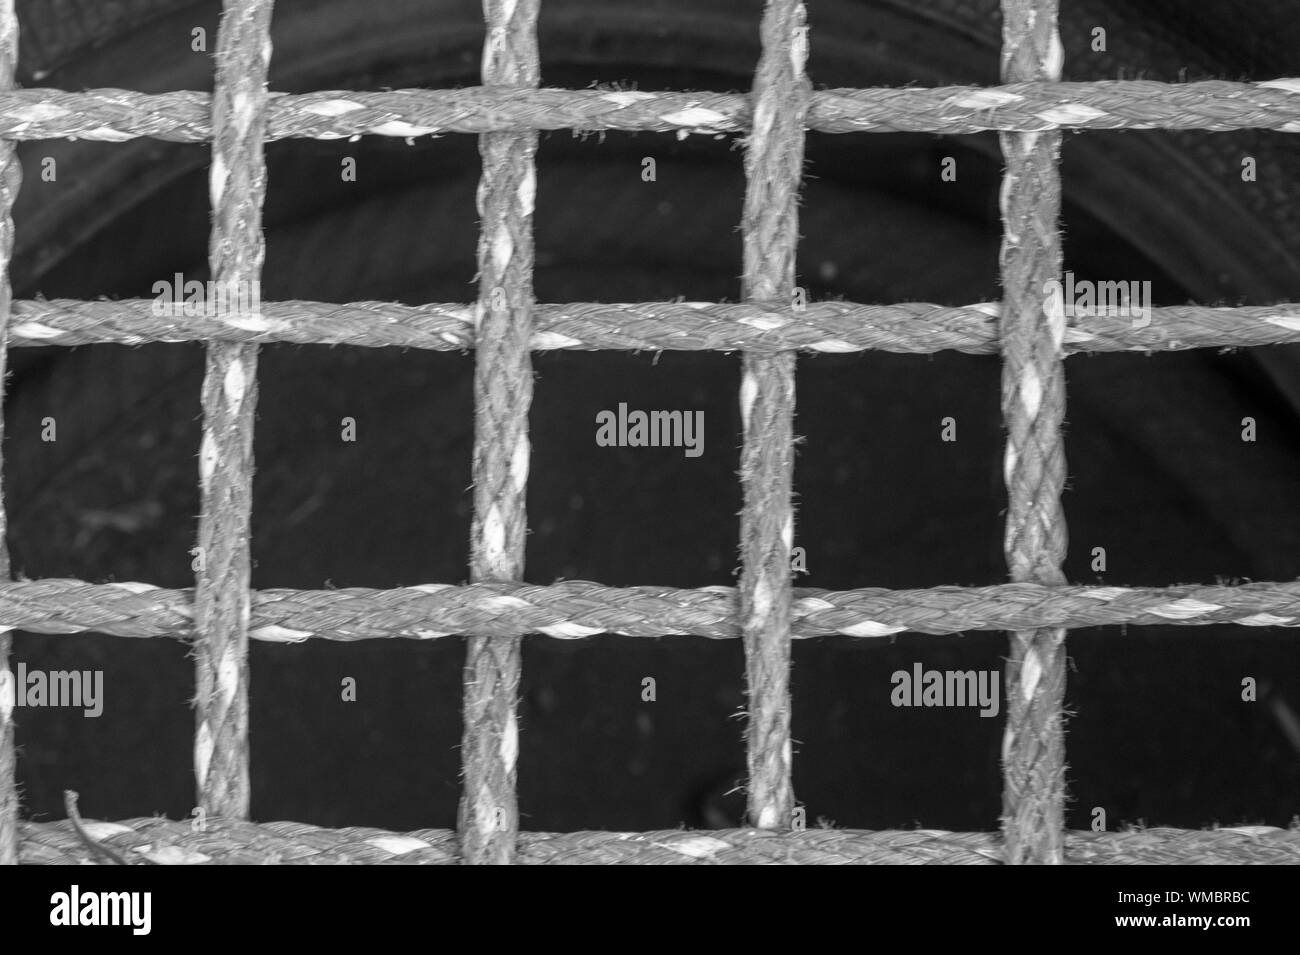 Schwarz-weiß Bild von bis aus Nylon safety Netting in einen Unterhaltungsbereich, um Kinder zu schützen. Schöne Texturen mit gesprenkelten Kontrast. Stockfoto